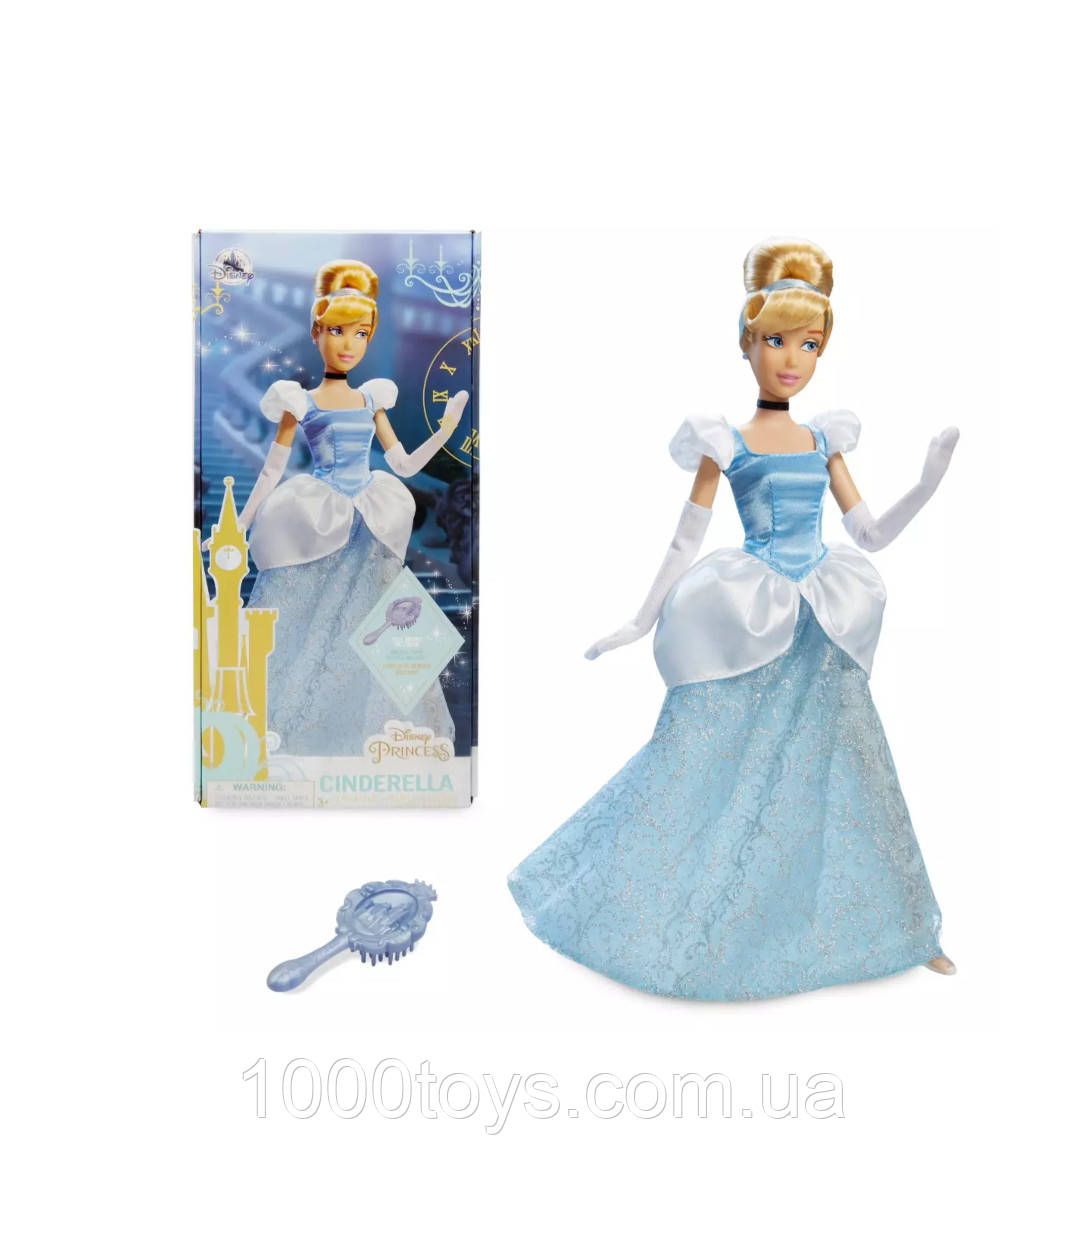 Кукла классическая Золушка  Дисней Doll  Cinderella Disney 29 см